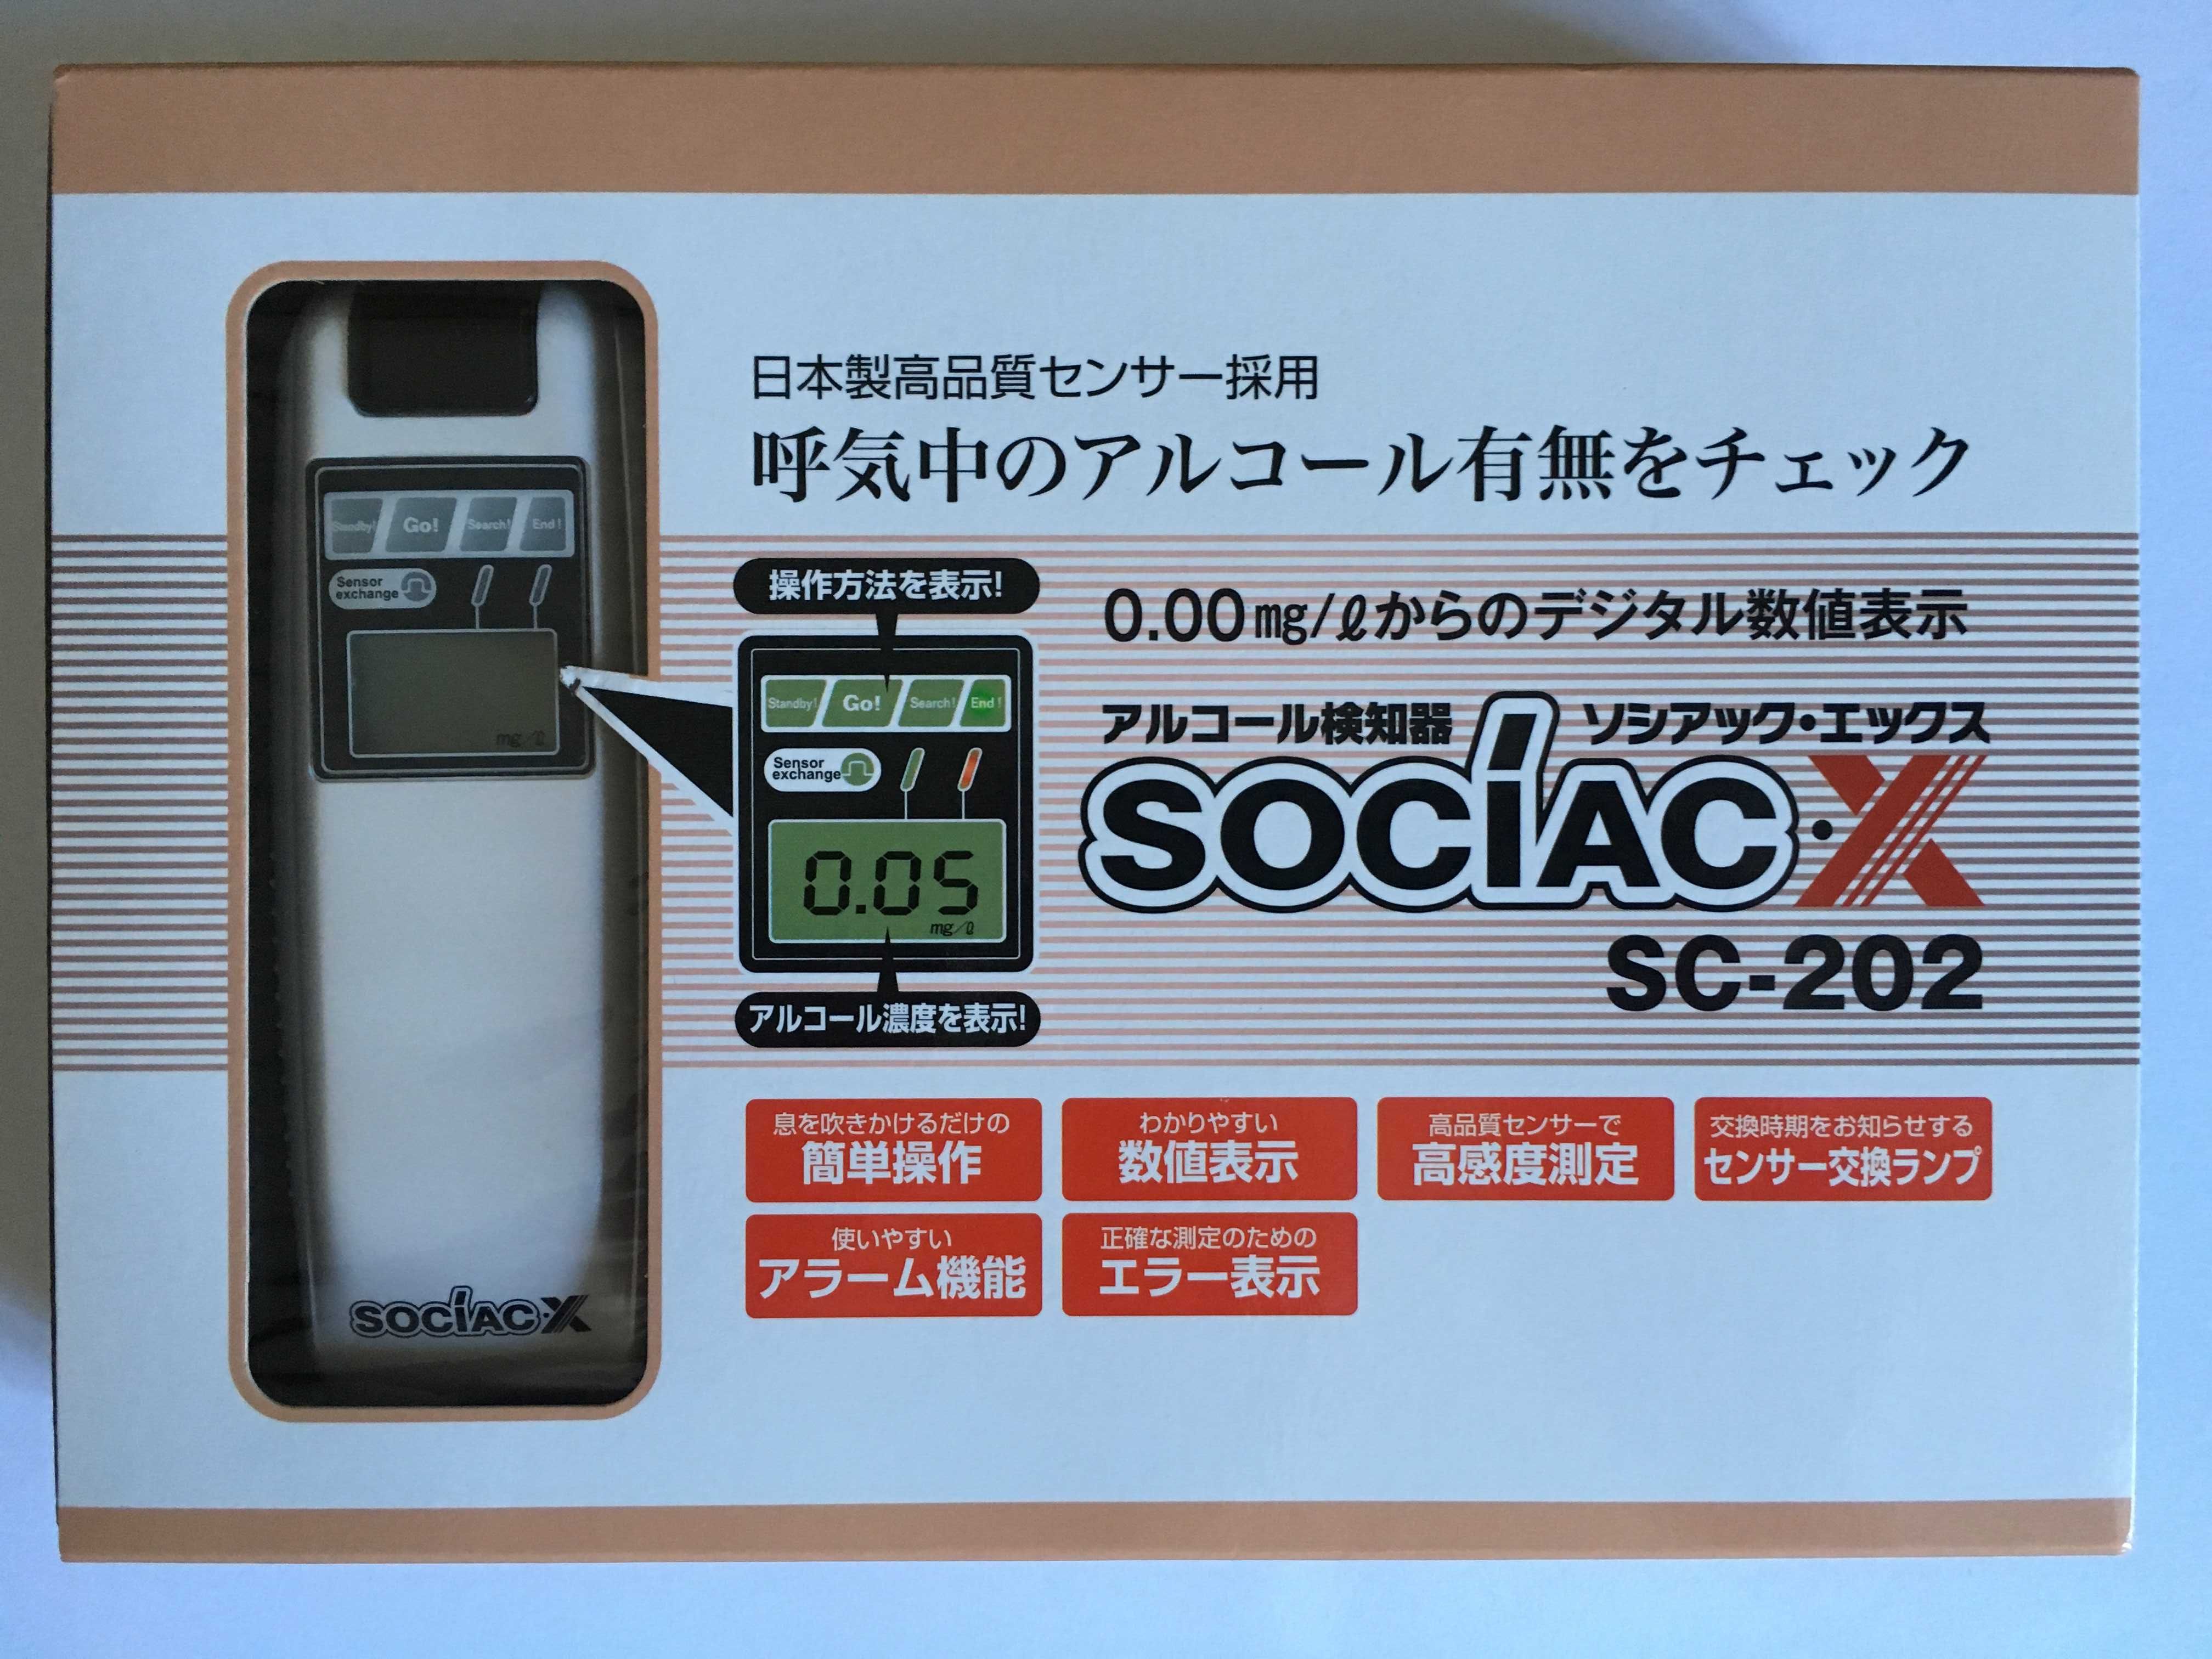 Алкотестер фирмы Sociac (Япония)